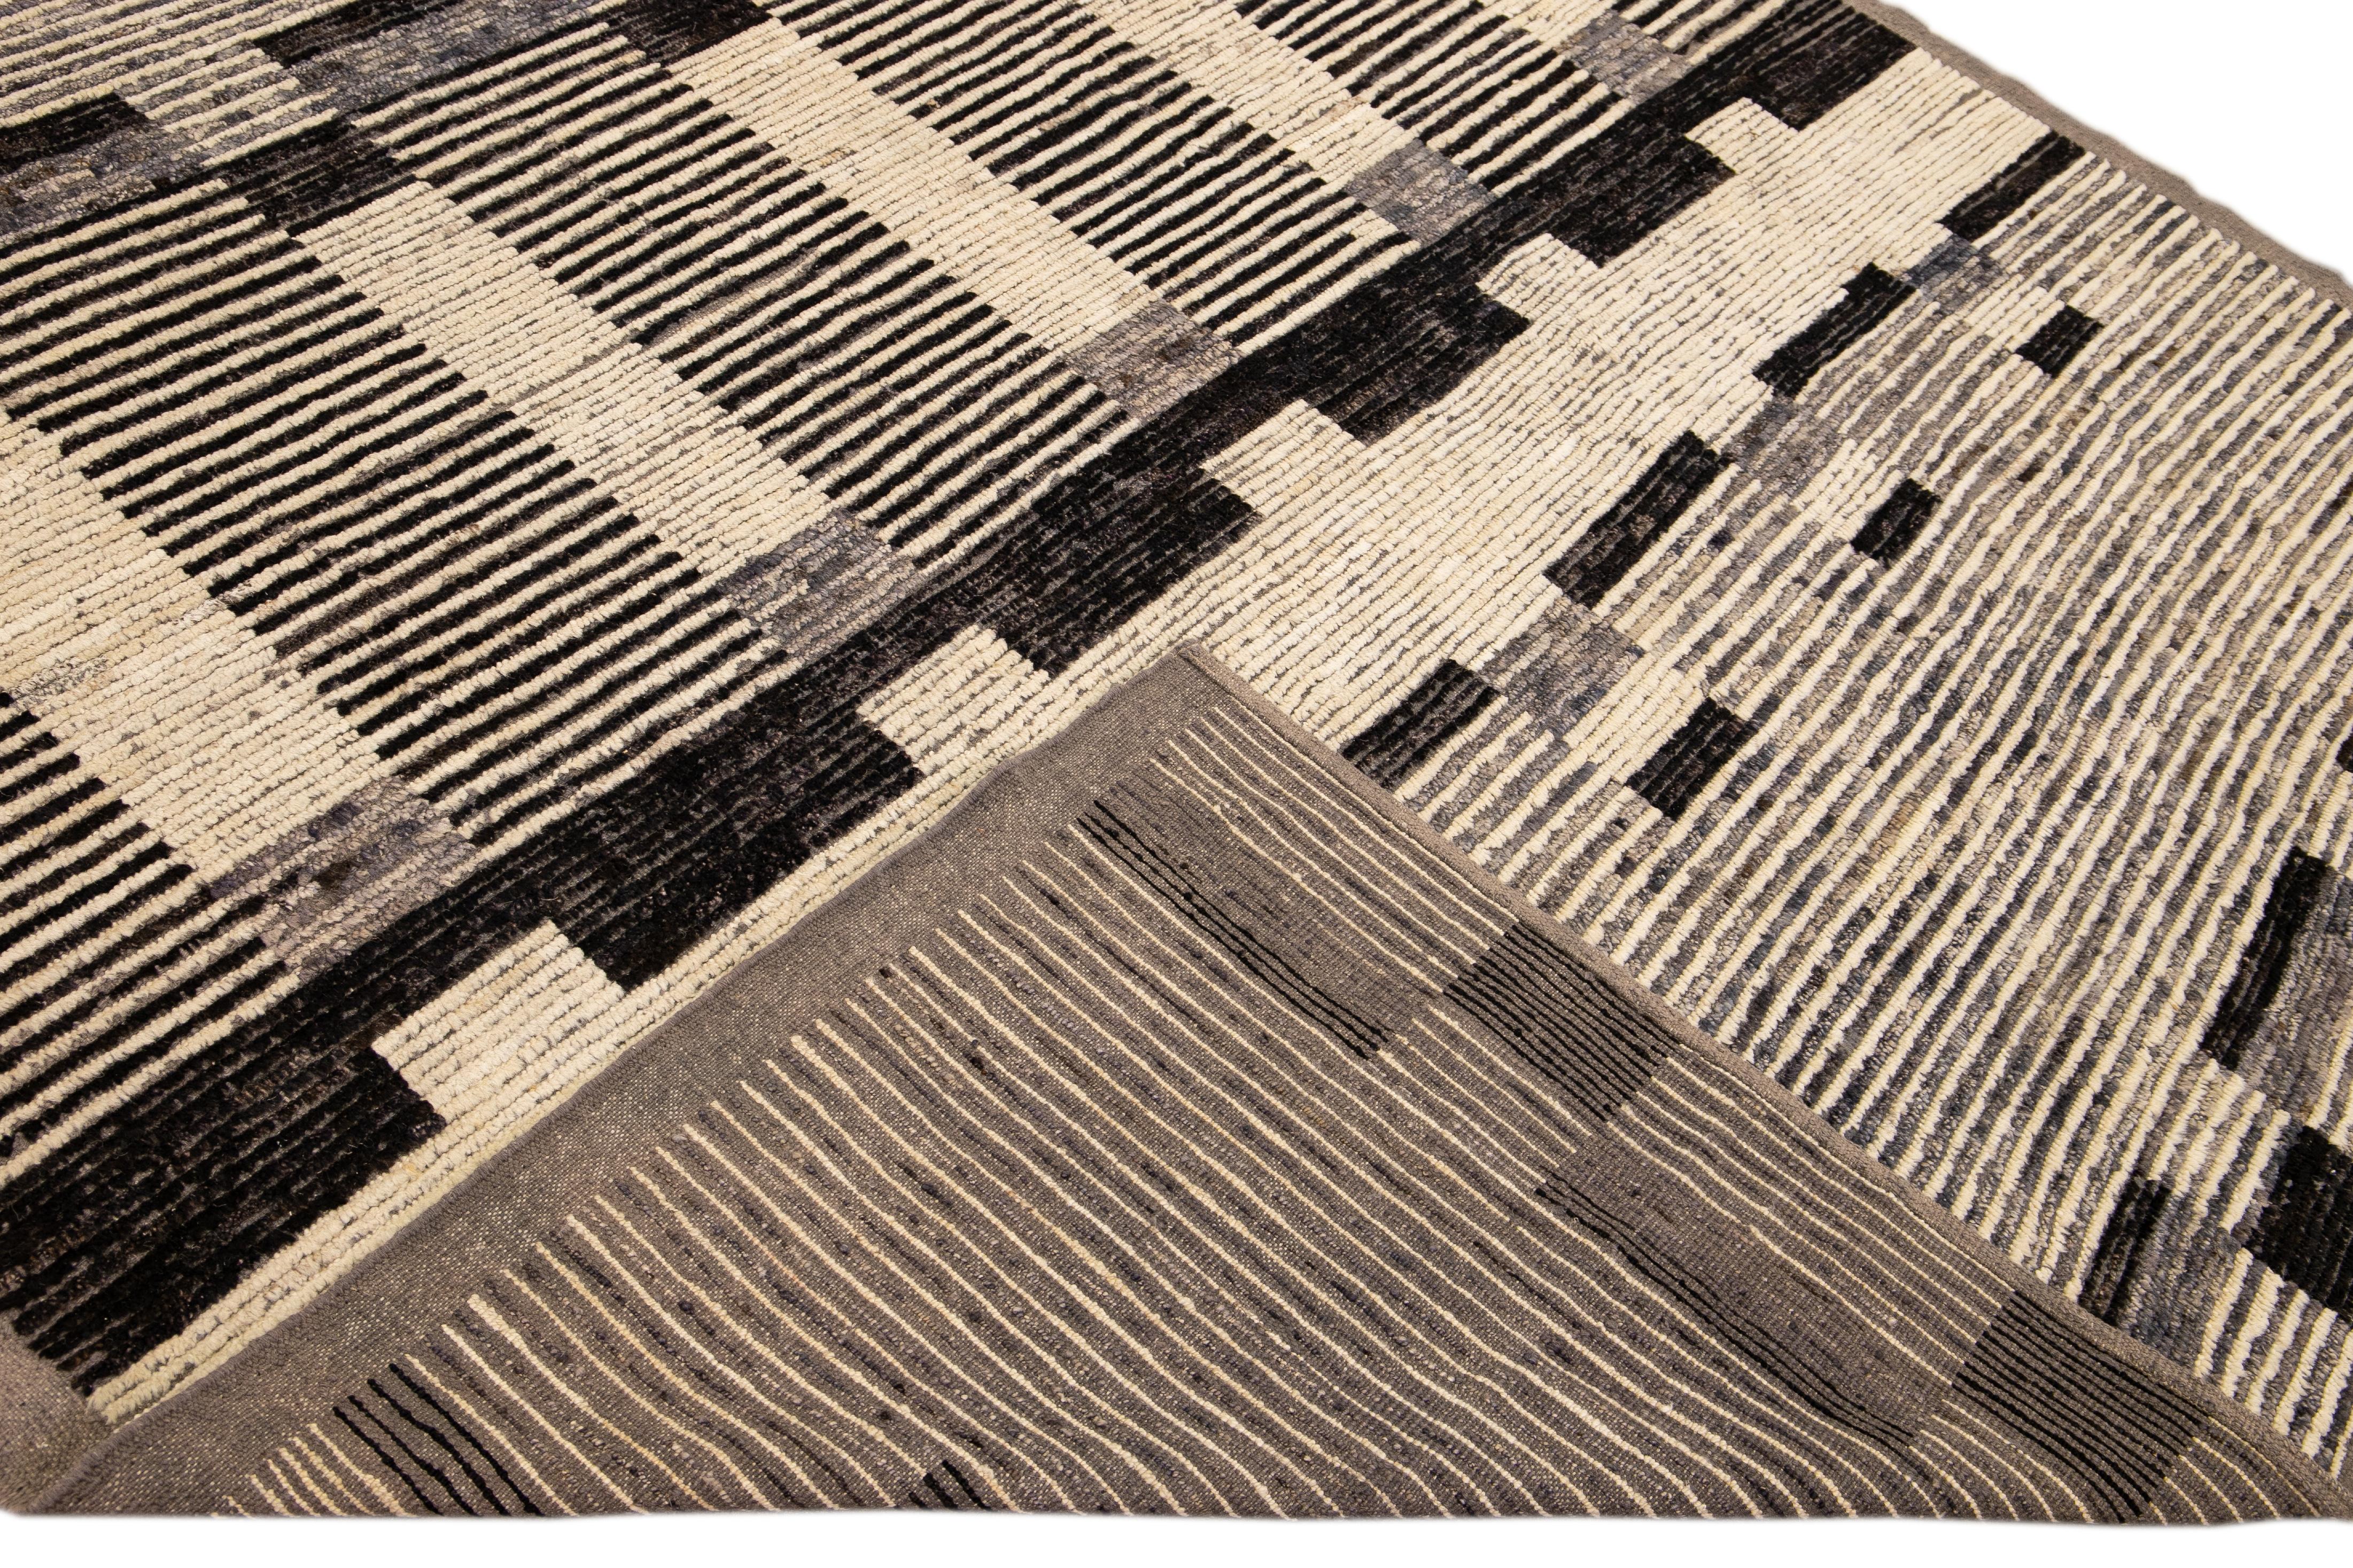 Schöner handgefertigter Wollteppich im marokkanischen Stil mit beigem Feld. Dieser moderne Teppich hat braune Akzente und ein wunderschönes, geometrisches Boho-Muster.

Dieser Teppich misst: 8'4